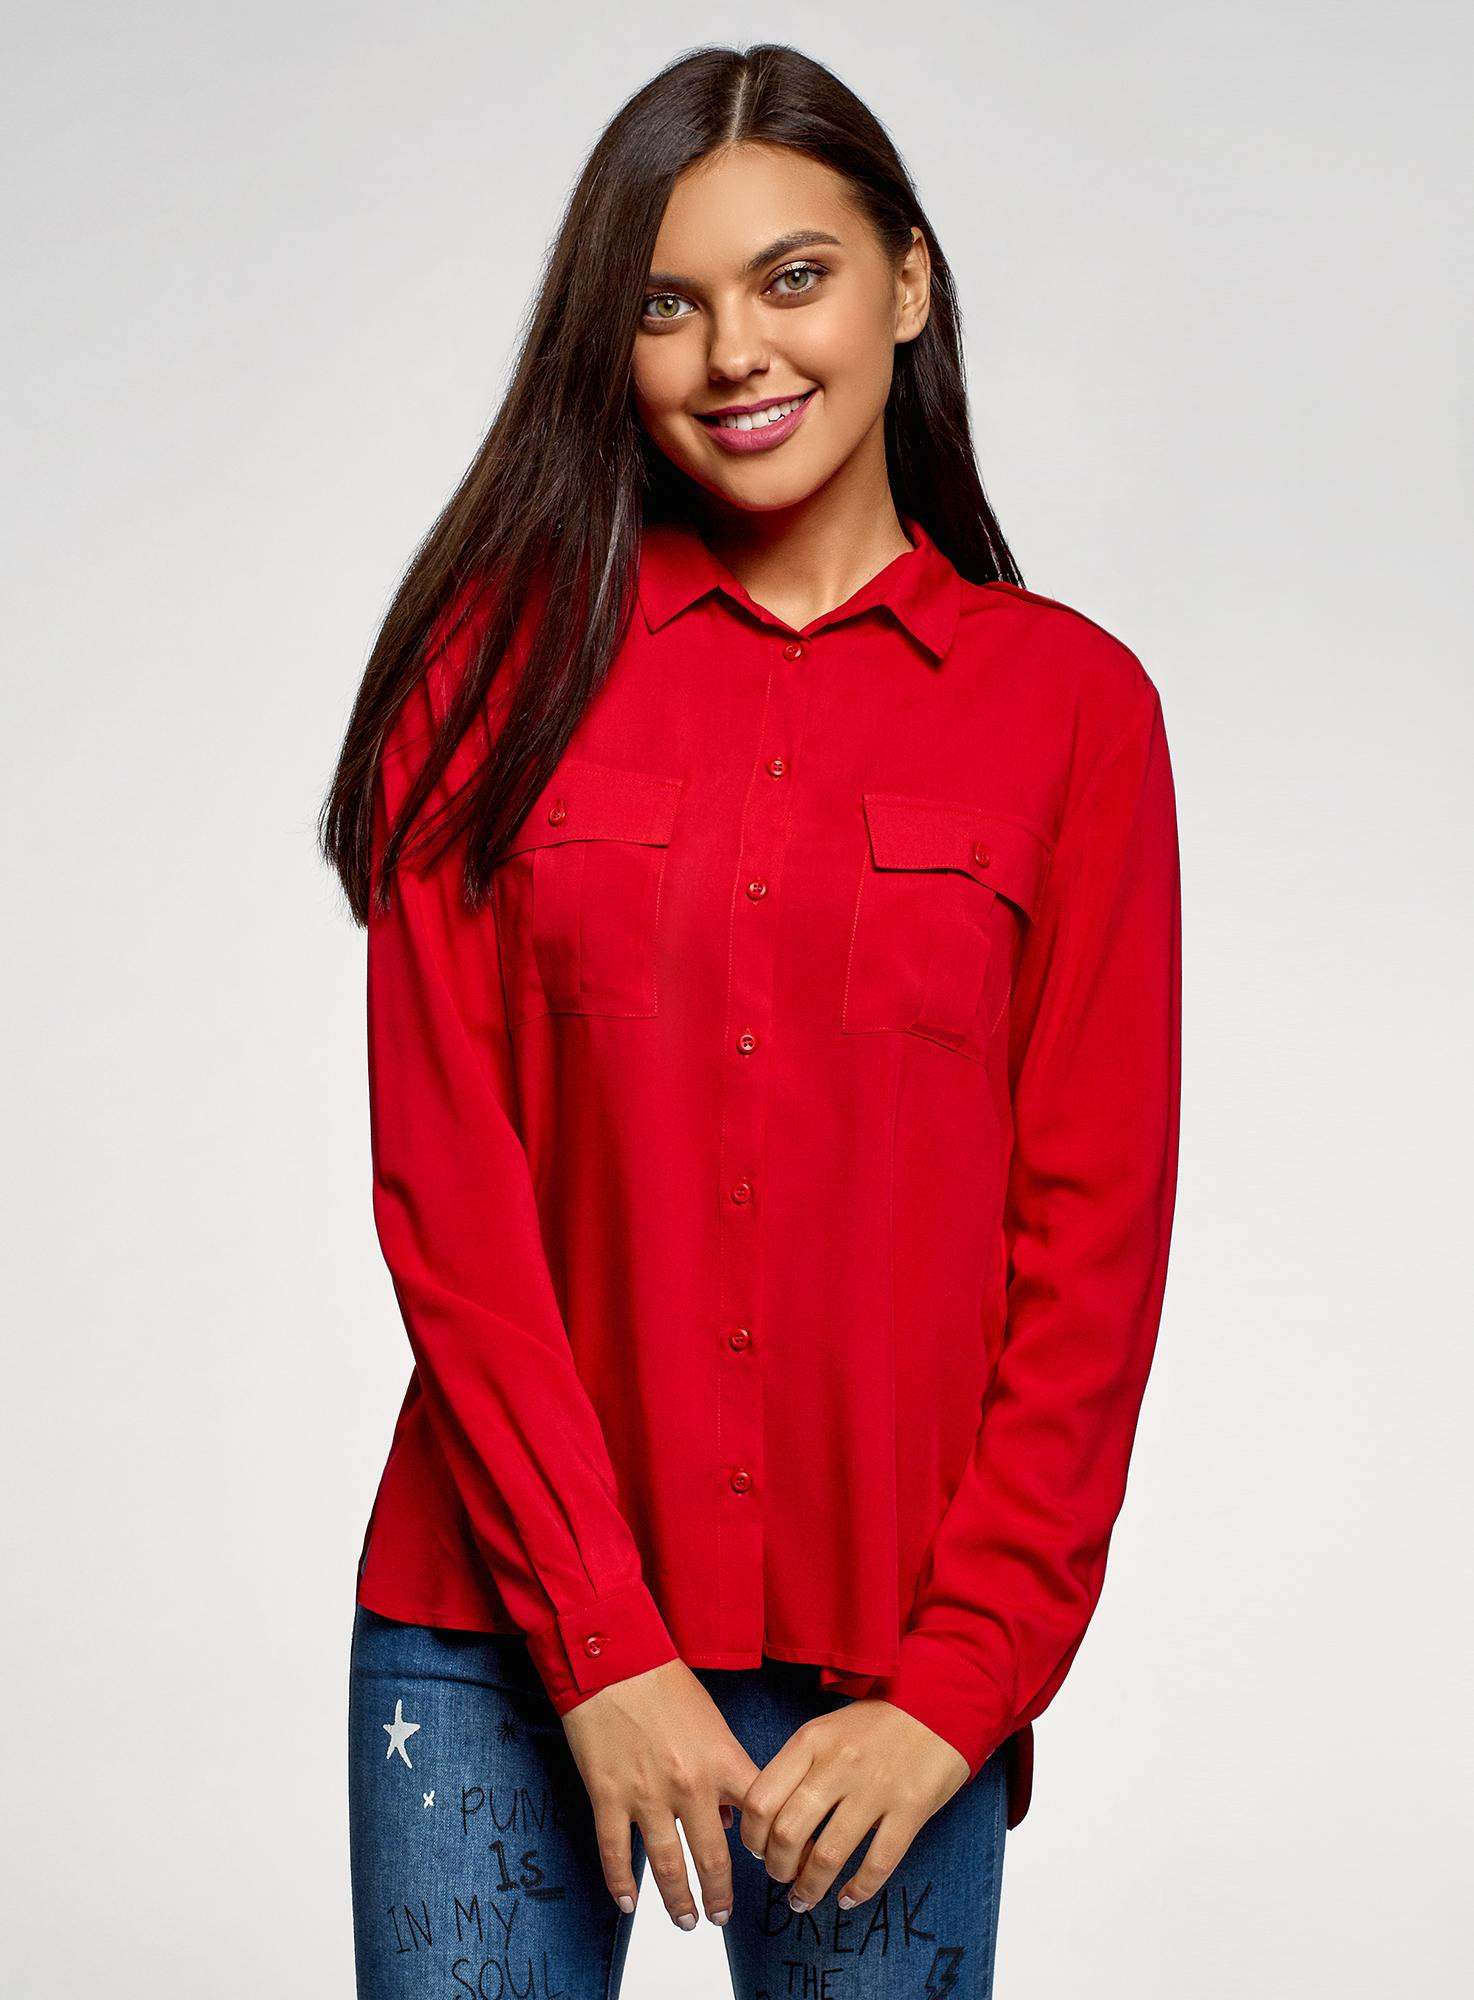 Красные блузки женская. Oodji блузка красная. Oodji красная кофта. Красная рубашка oodji. Красная рубашка женская.